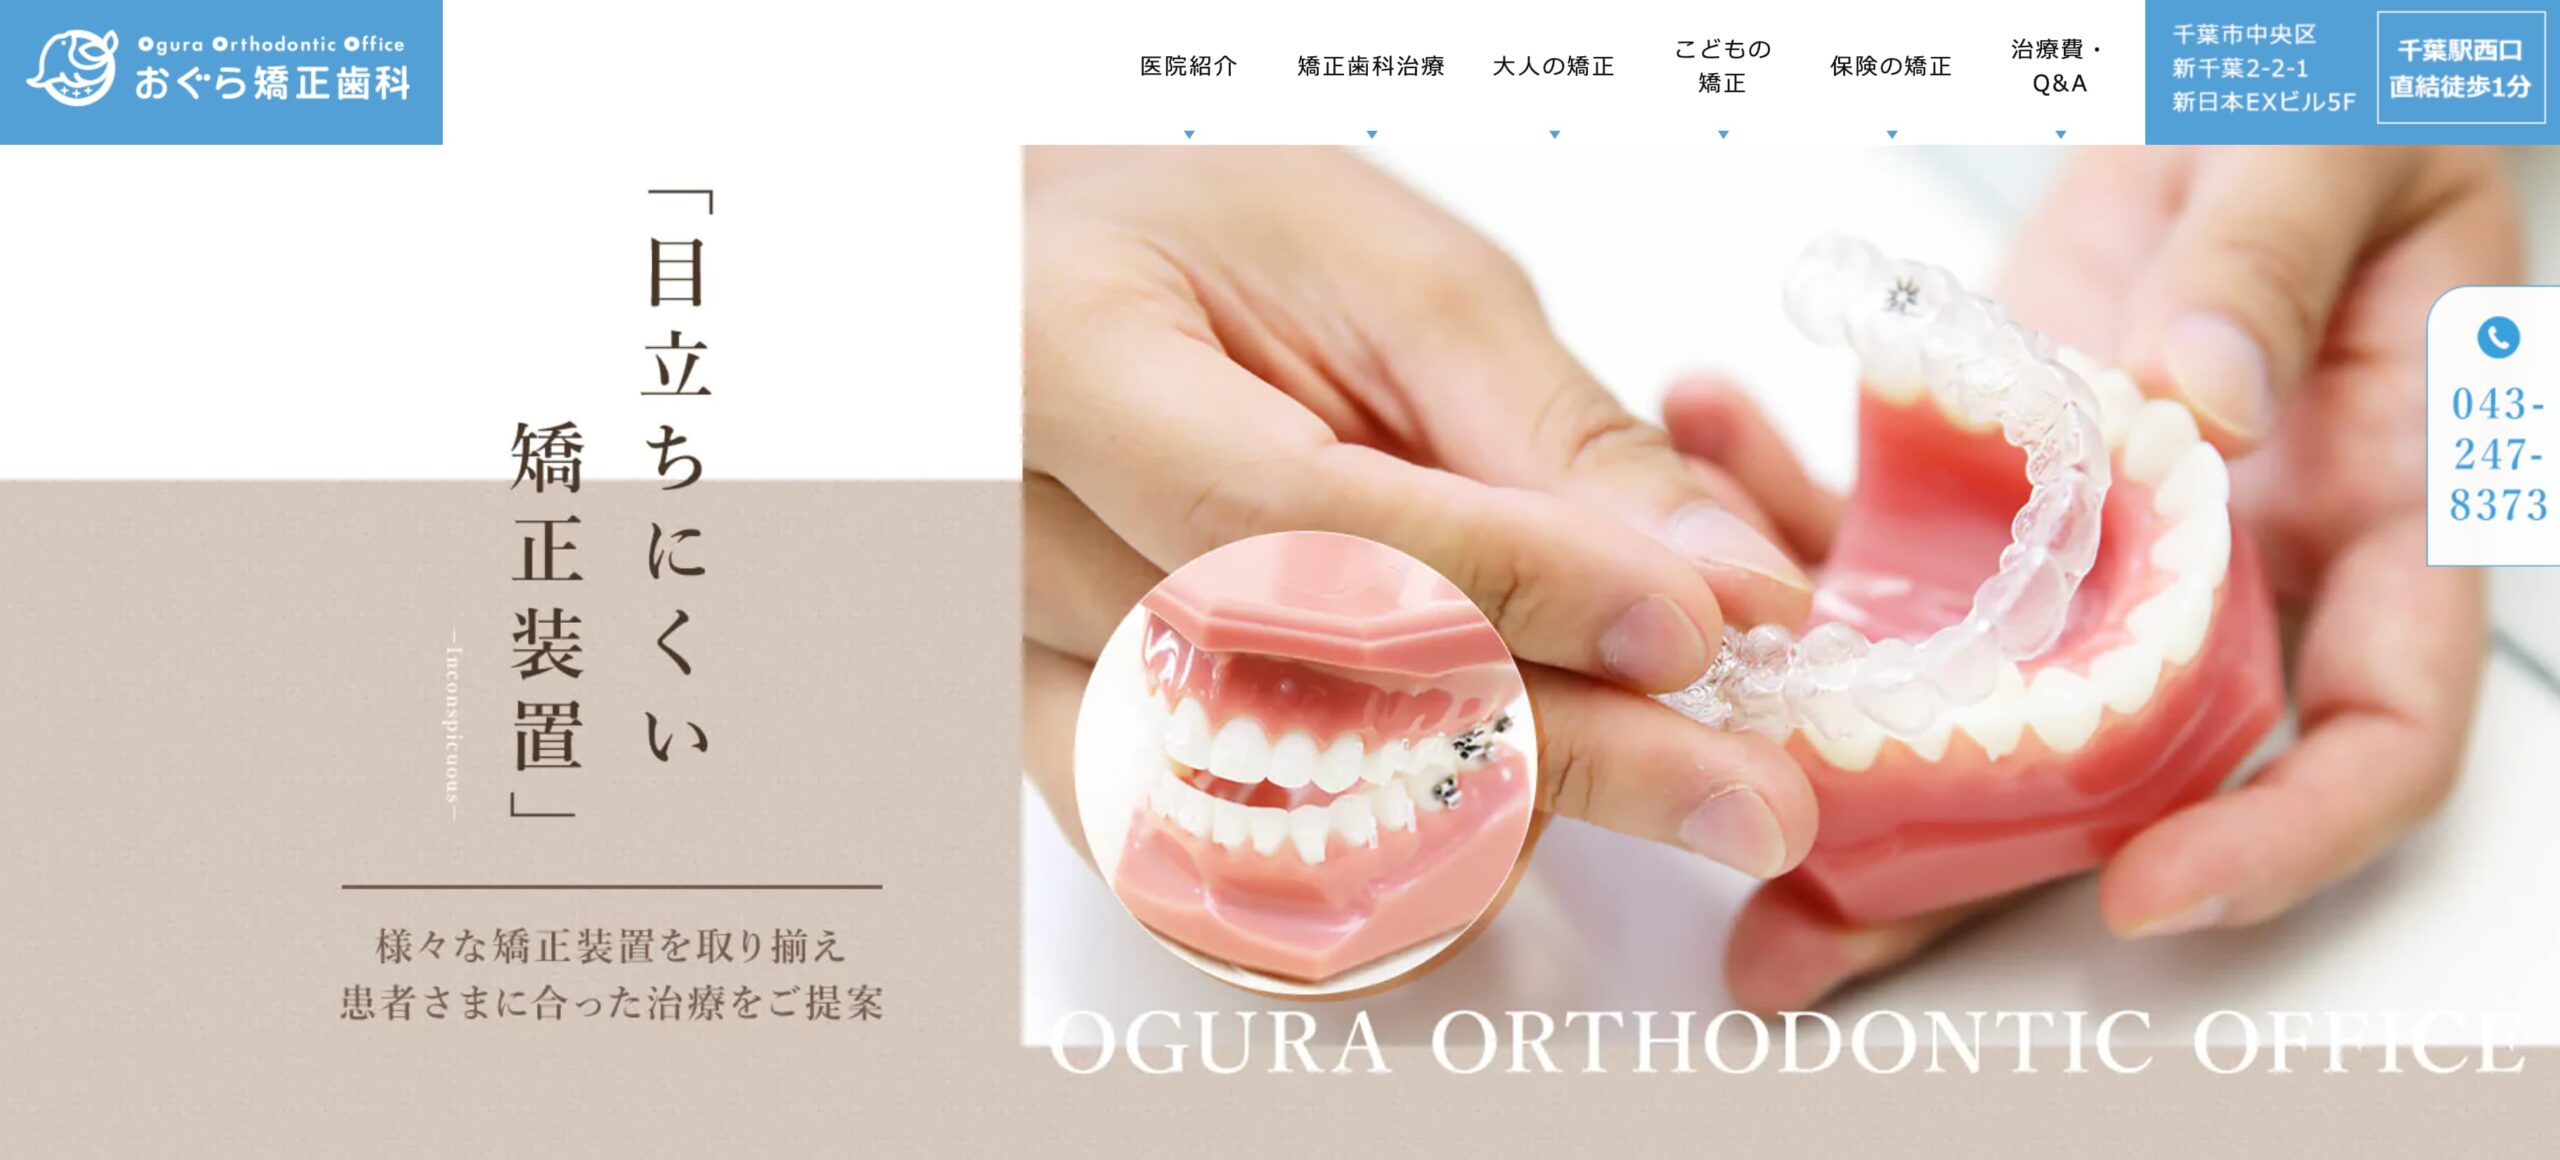 千葉県のマウスピース型矯正におすすめの歯科クリニック10選 おぐら矯正歯科